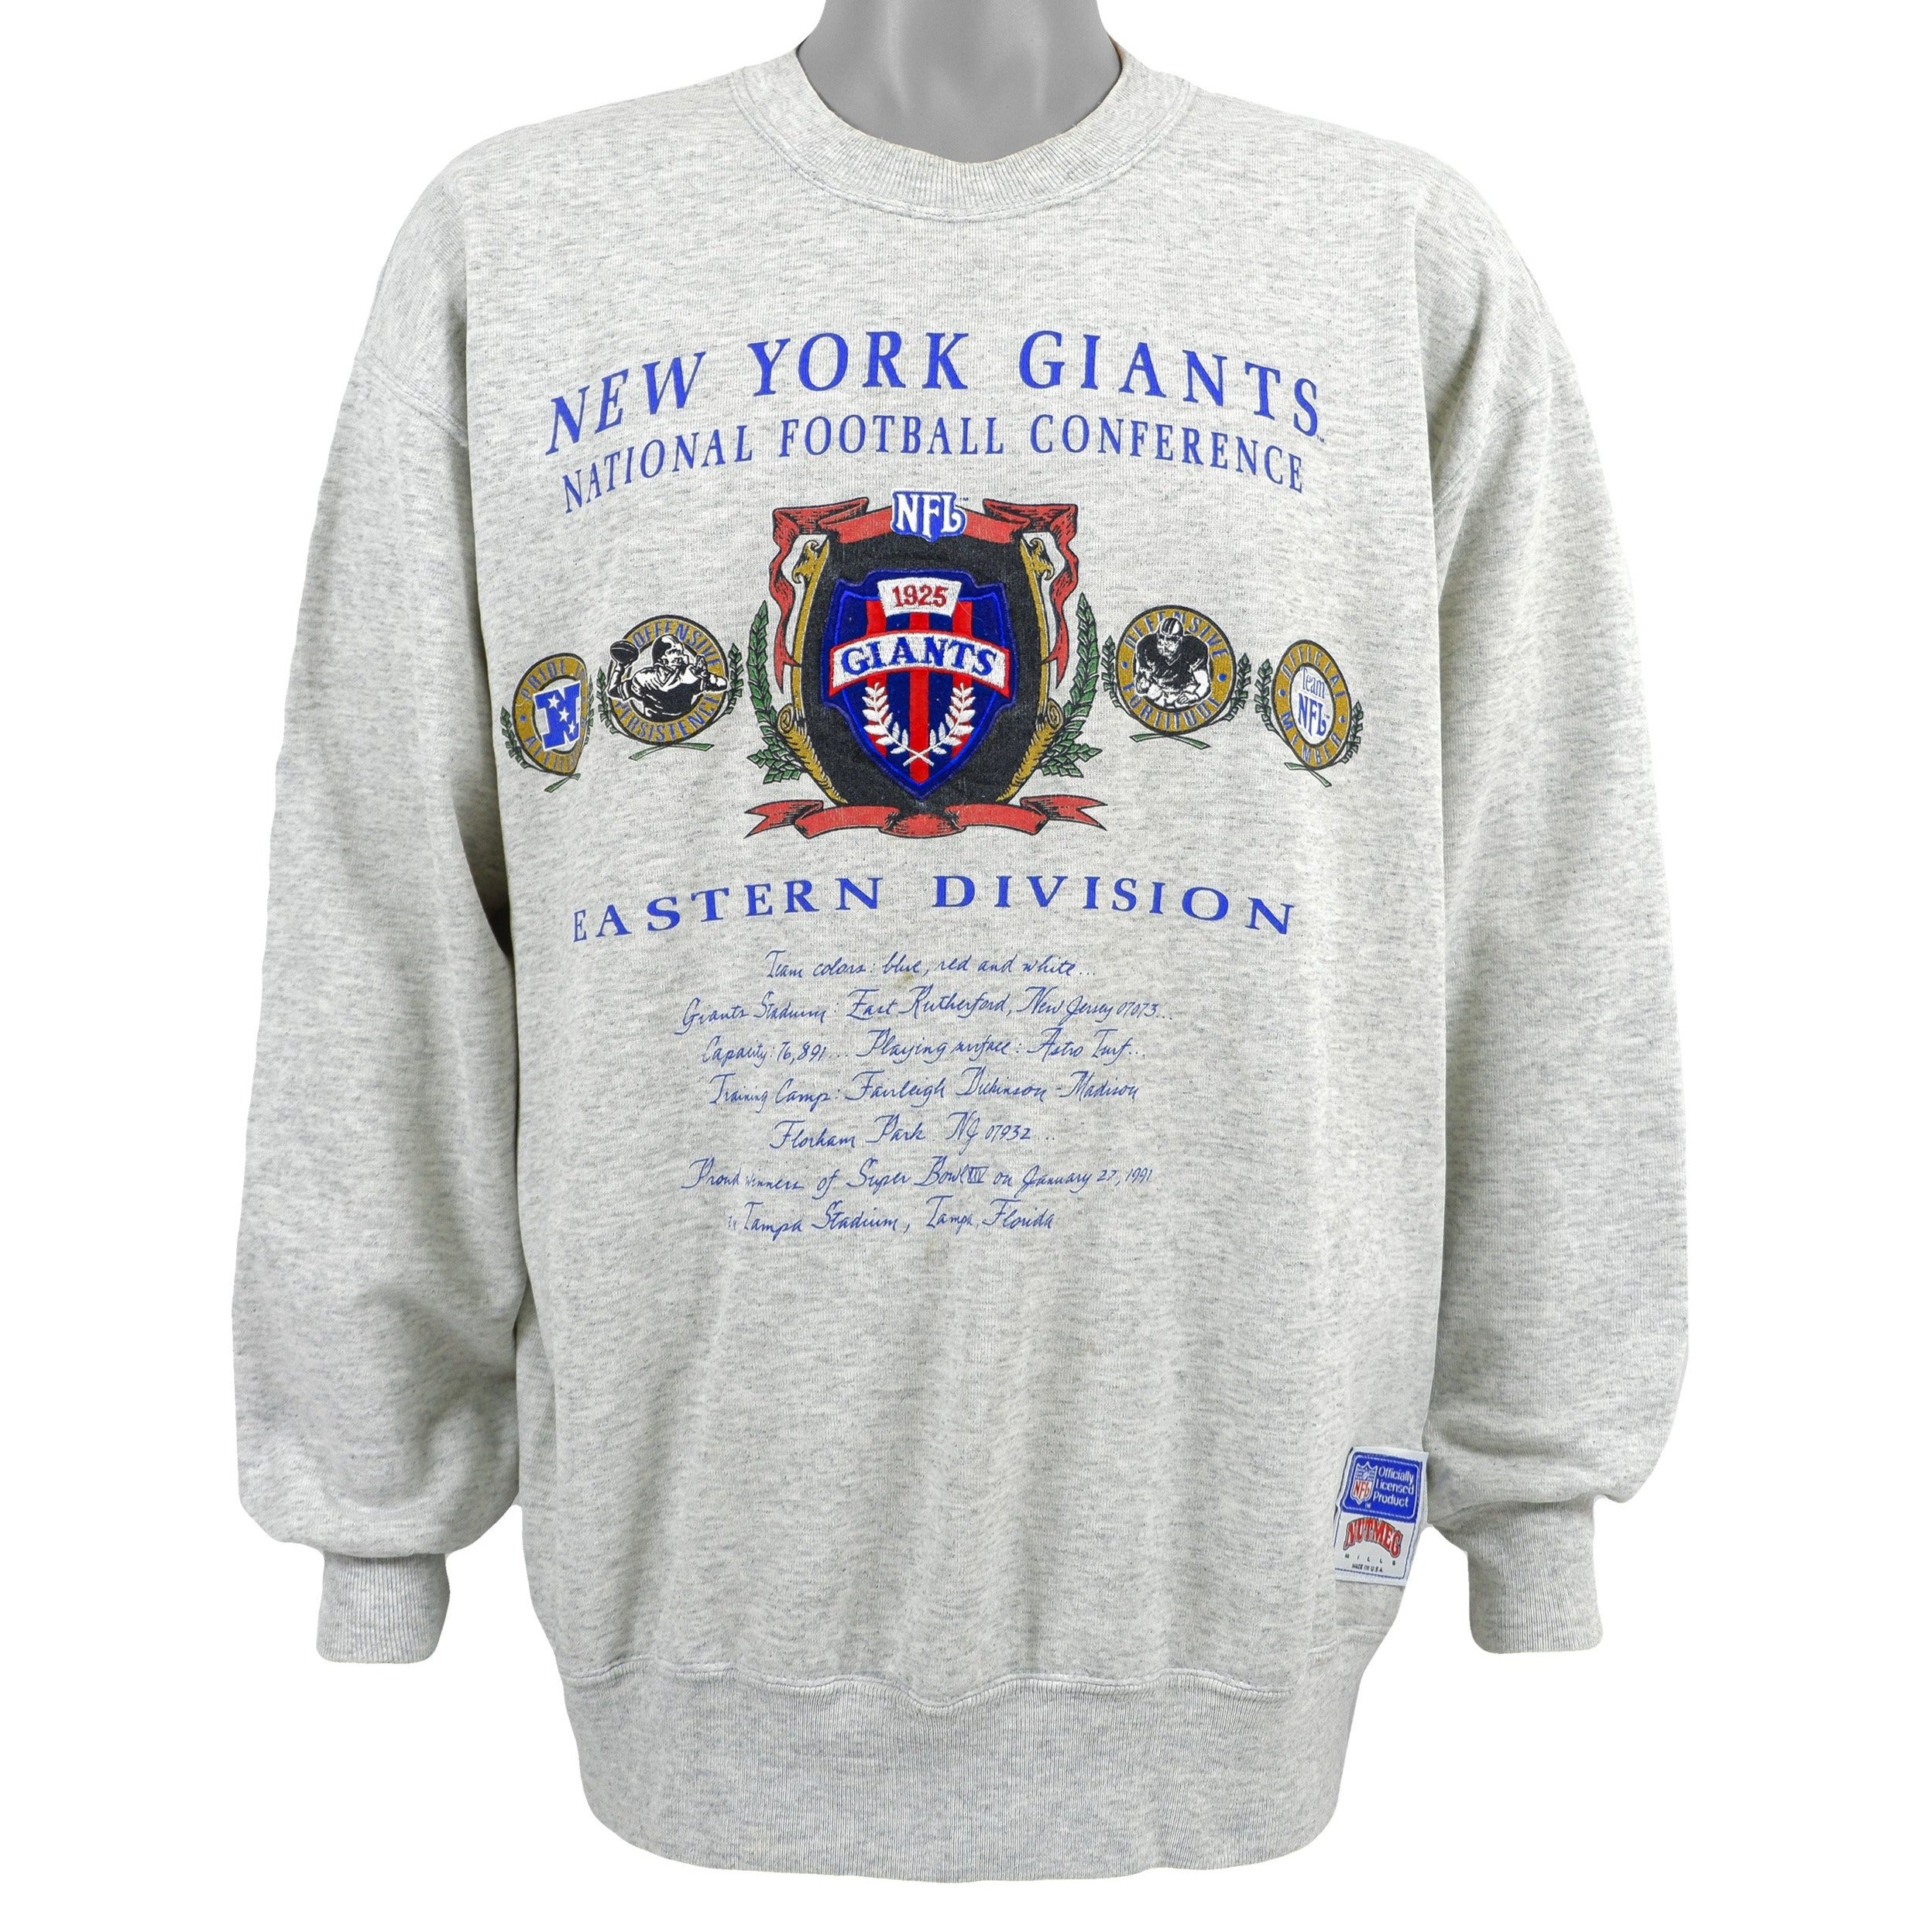 Sweaters, Vintage 199s Nutmeg Boston Bruins Crewneck